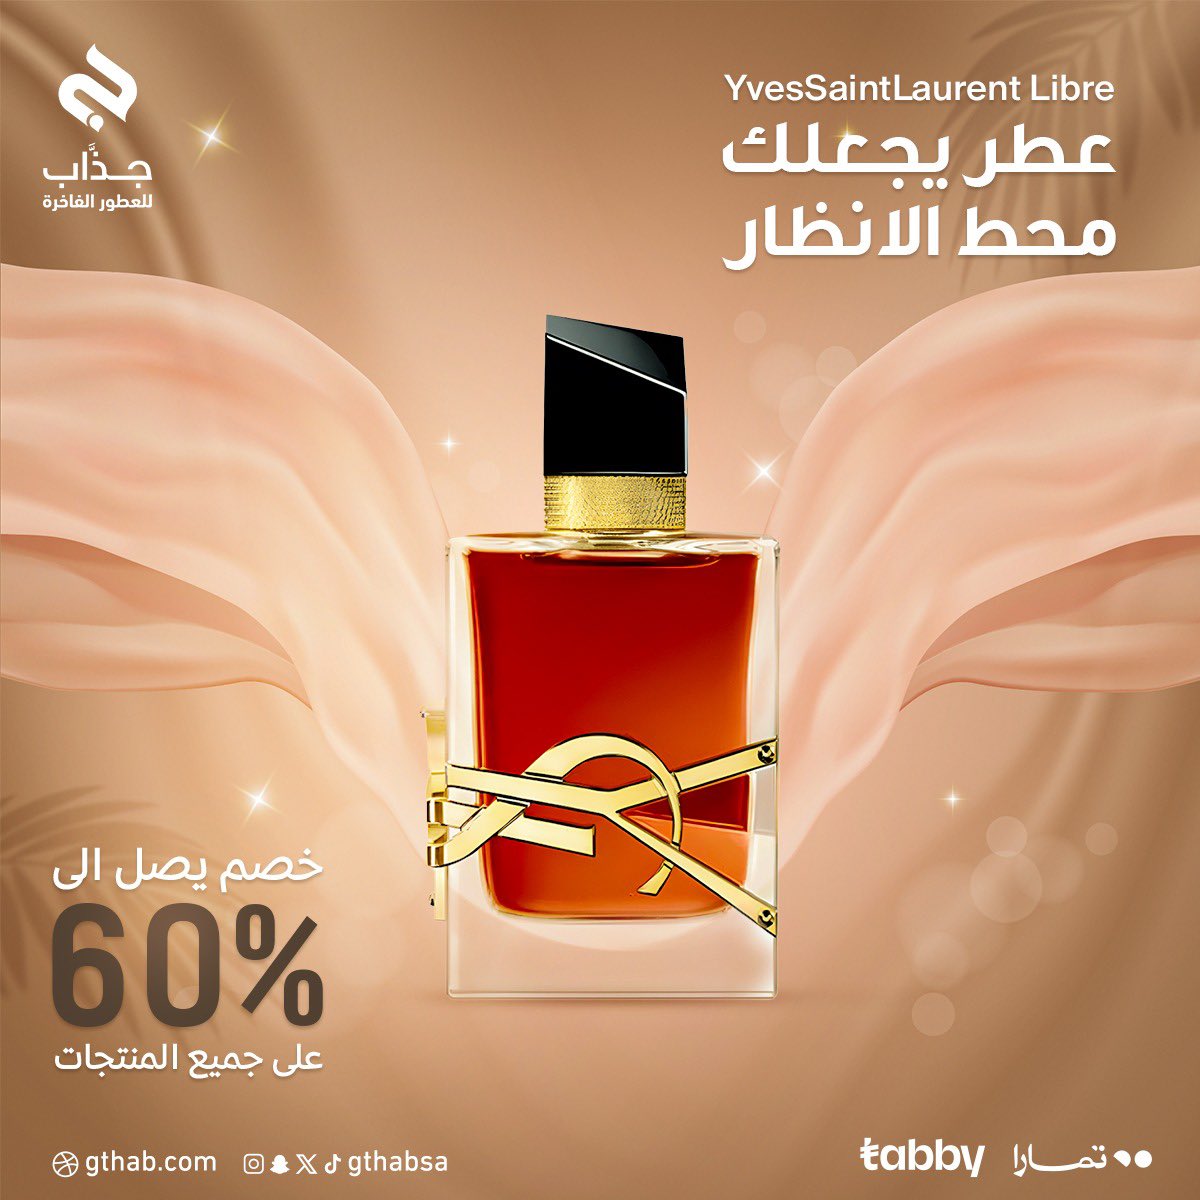 اكتشفي سحر عطر Yves Saint Laurent Libre وكوني محط الأنظار✨.

استمتعي بخصم يصل إلى 60% على جميع المنتجات في gthab.com! 🛍️

#عطر #تخفيضات #YSL #womenstyle #perfume